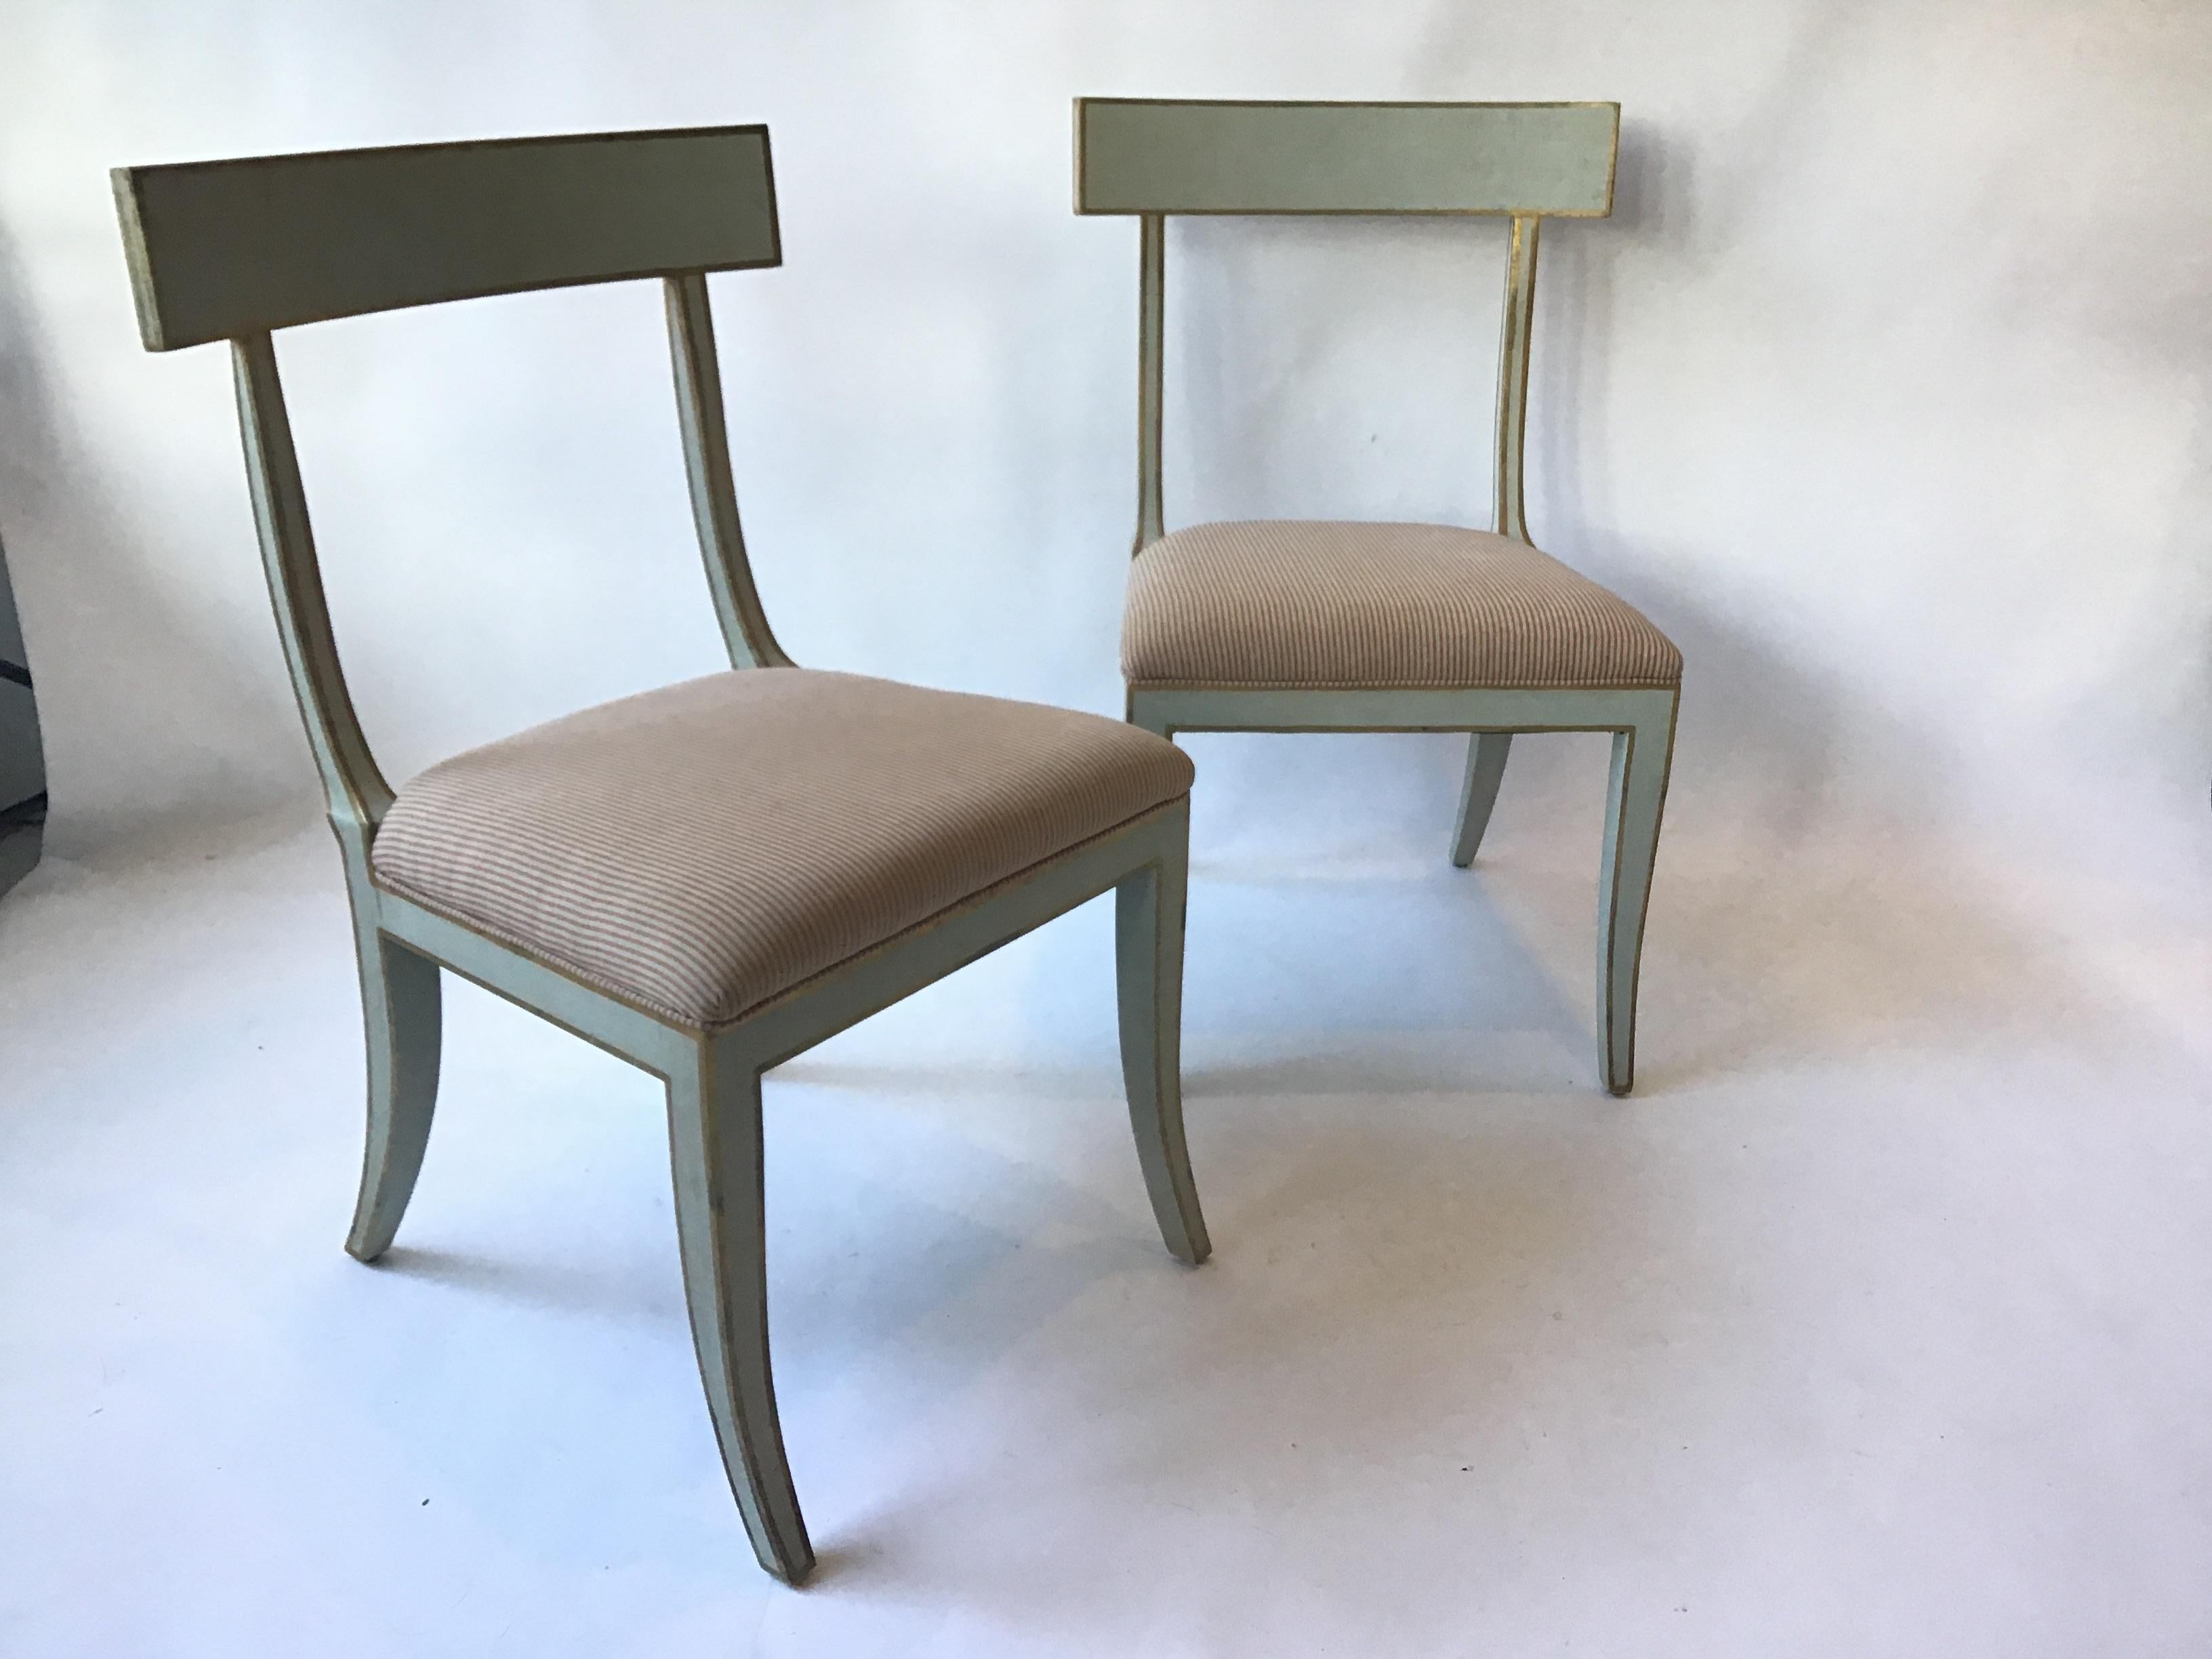 4 Elgin major dining chairs by Niermann Weeks.
 